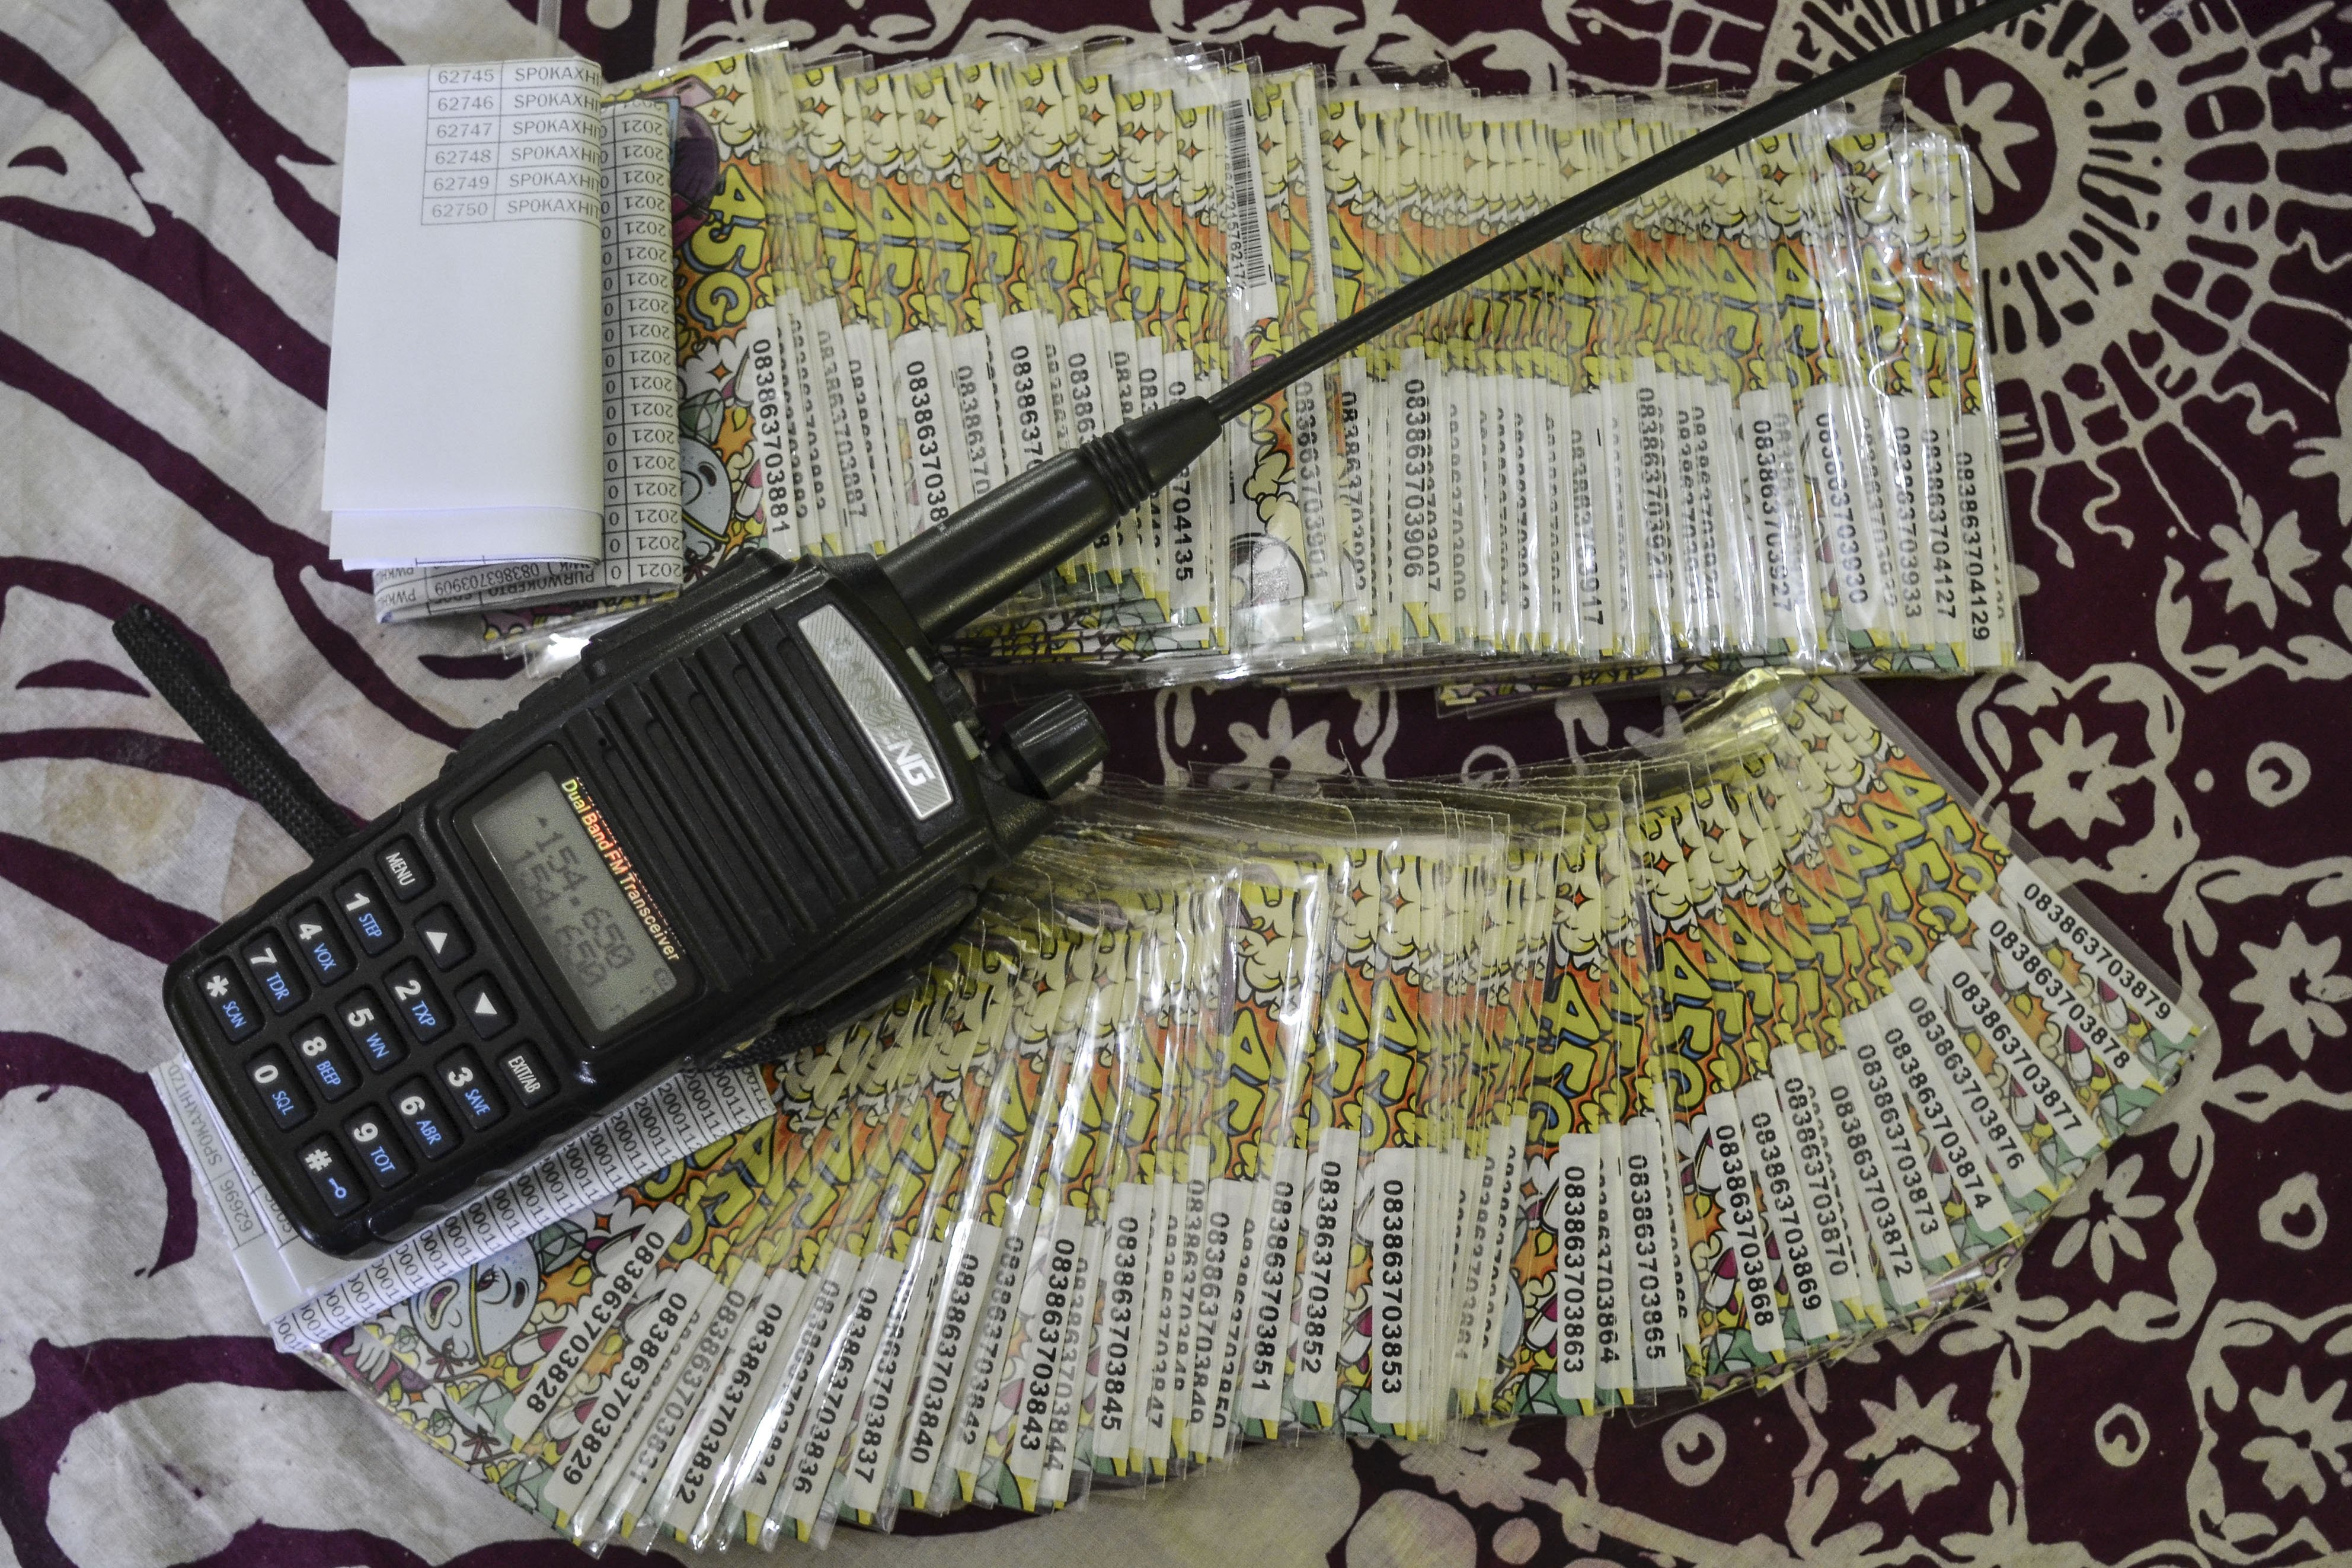 Tumpukan kartu perdana seluler bantuan dari pemerintah yang tidak terpakai dan radio Handy Talky (HT) di ruang guru sekolah Madrasah Ibtidaiyah Pasawahan, Dusun Ciakar, Desa Pasawahan, Kecamatan Banjaranyar Kabupaten Ciamis, Jawa Barat.